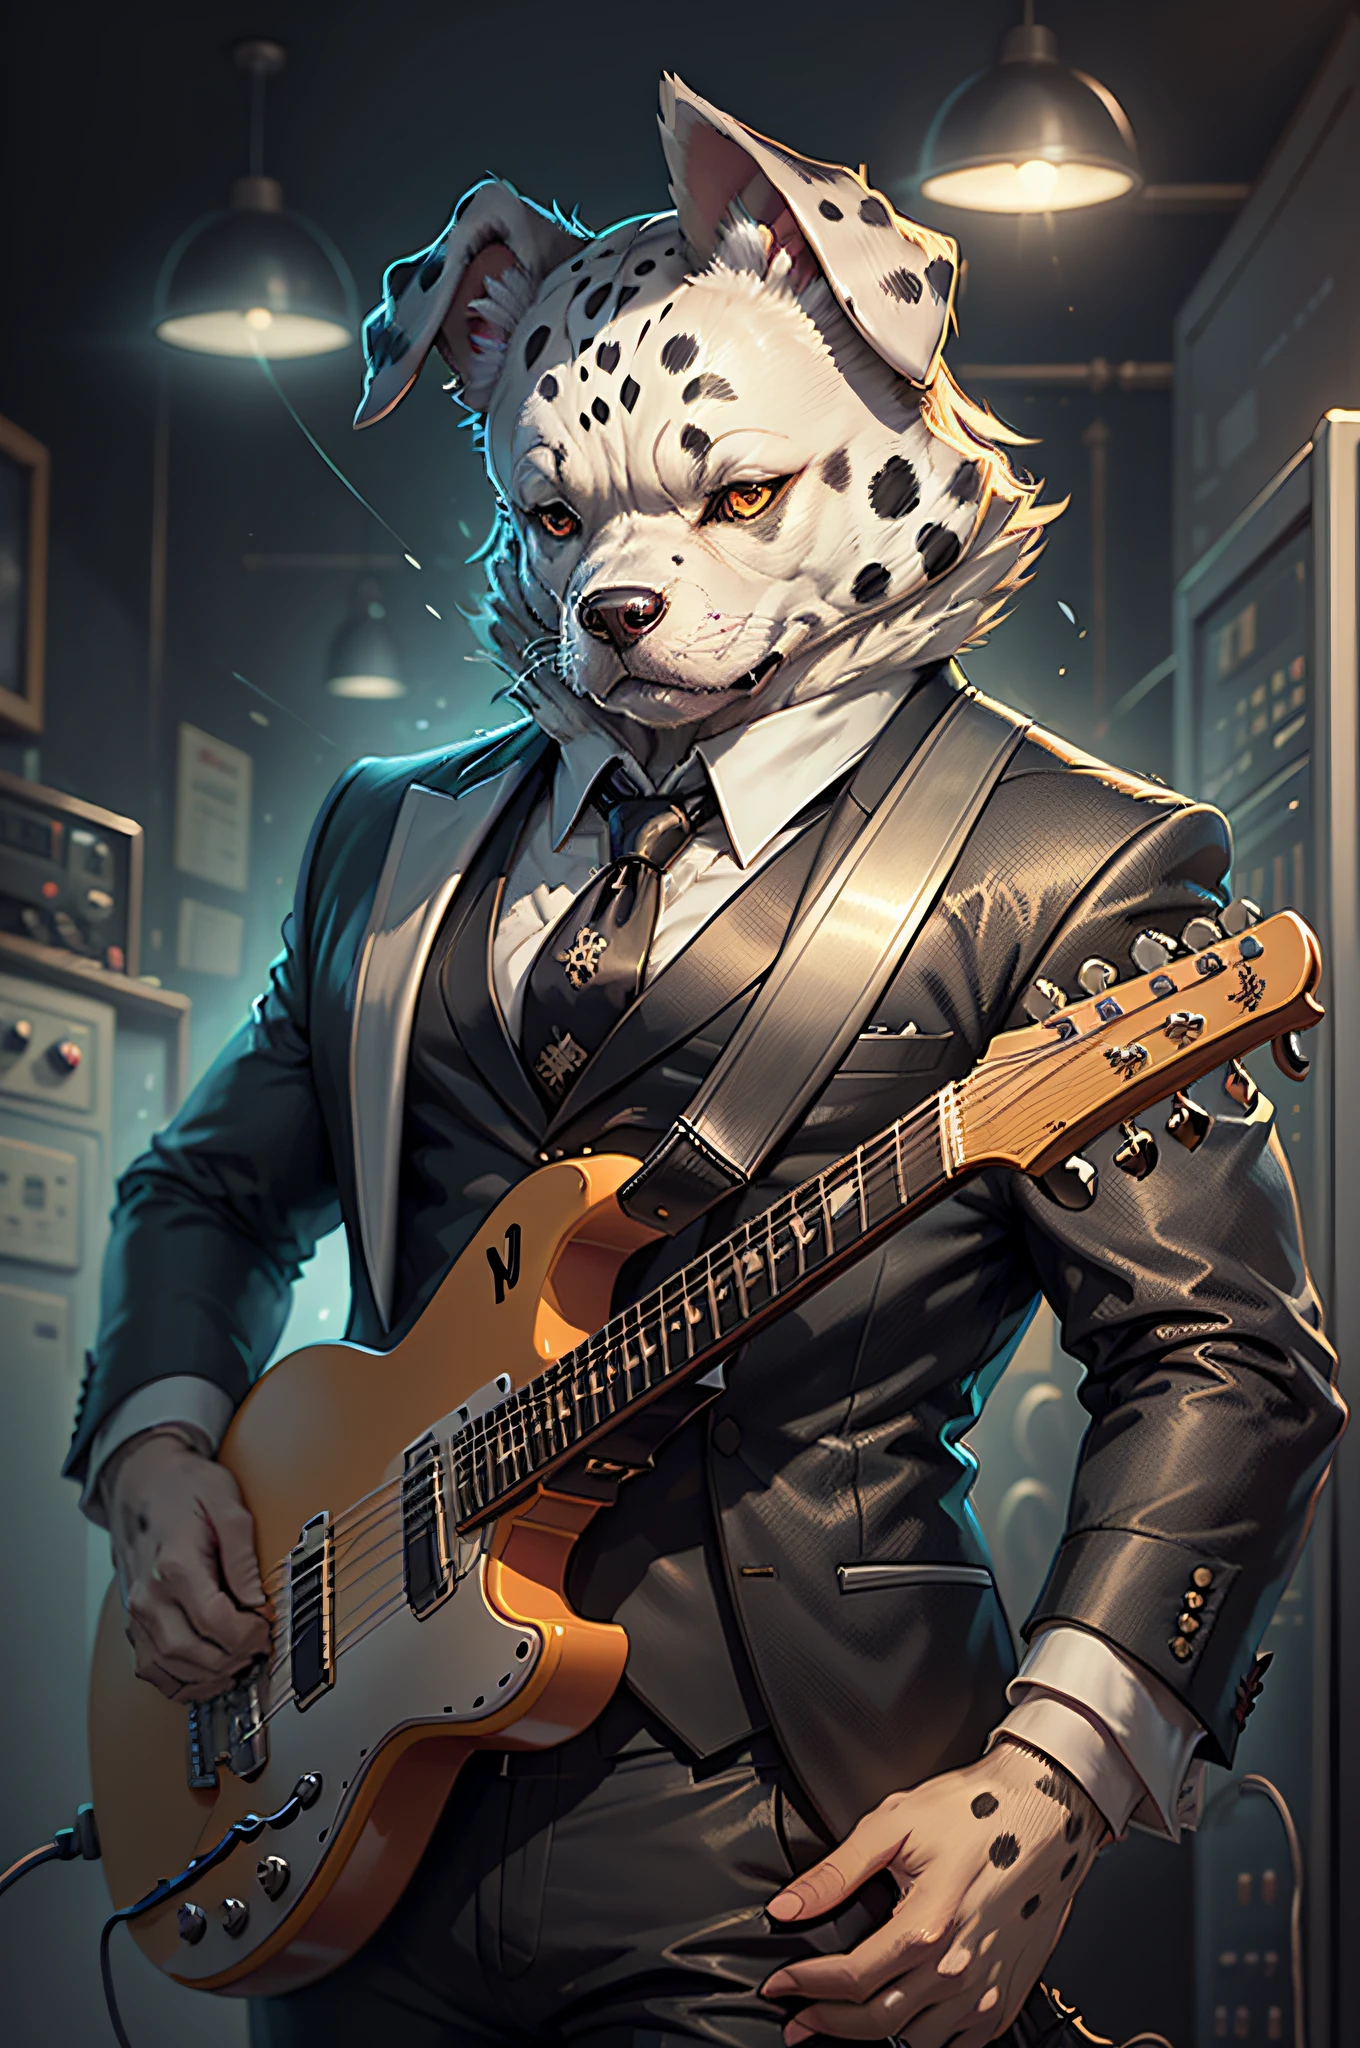 (黒いスーツとネクタイを着た男性)エレキギターを弾く漫画、擬人化された垂れ耳のダルメシアン犬